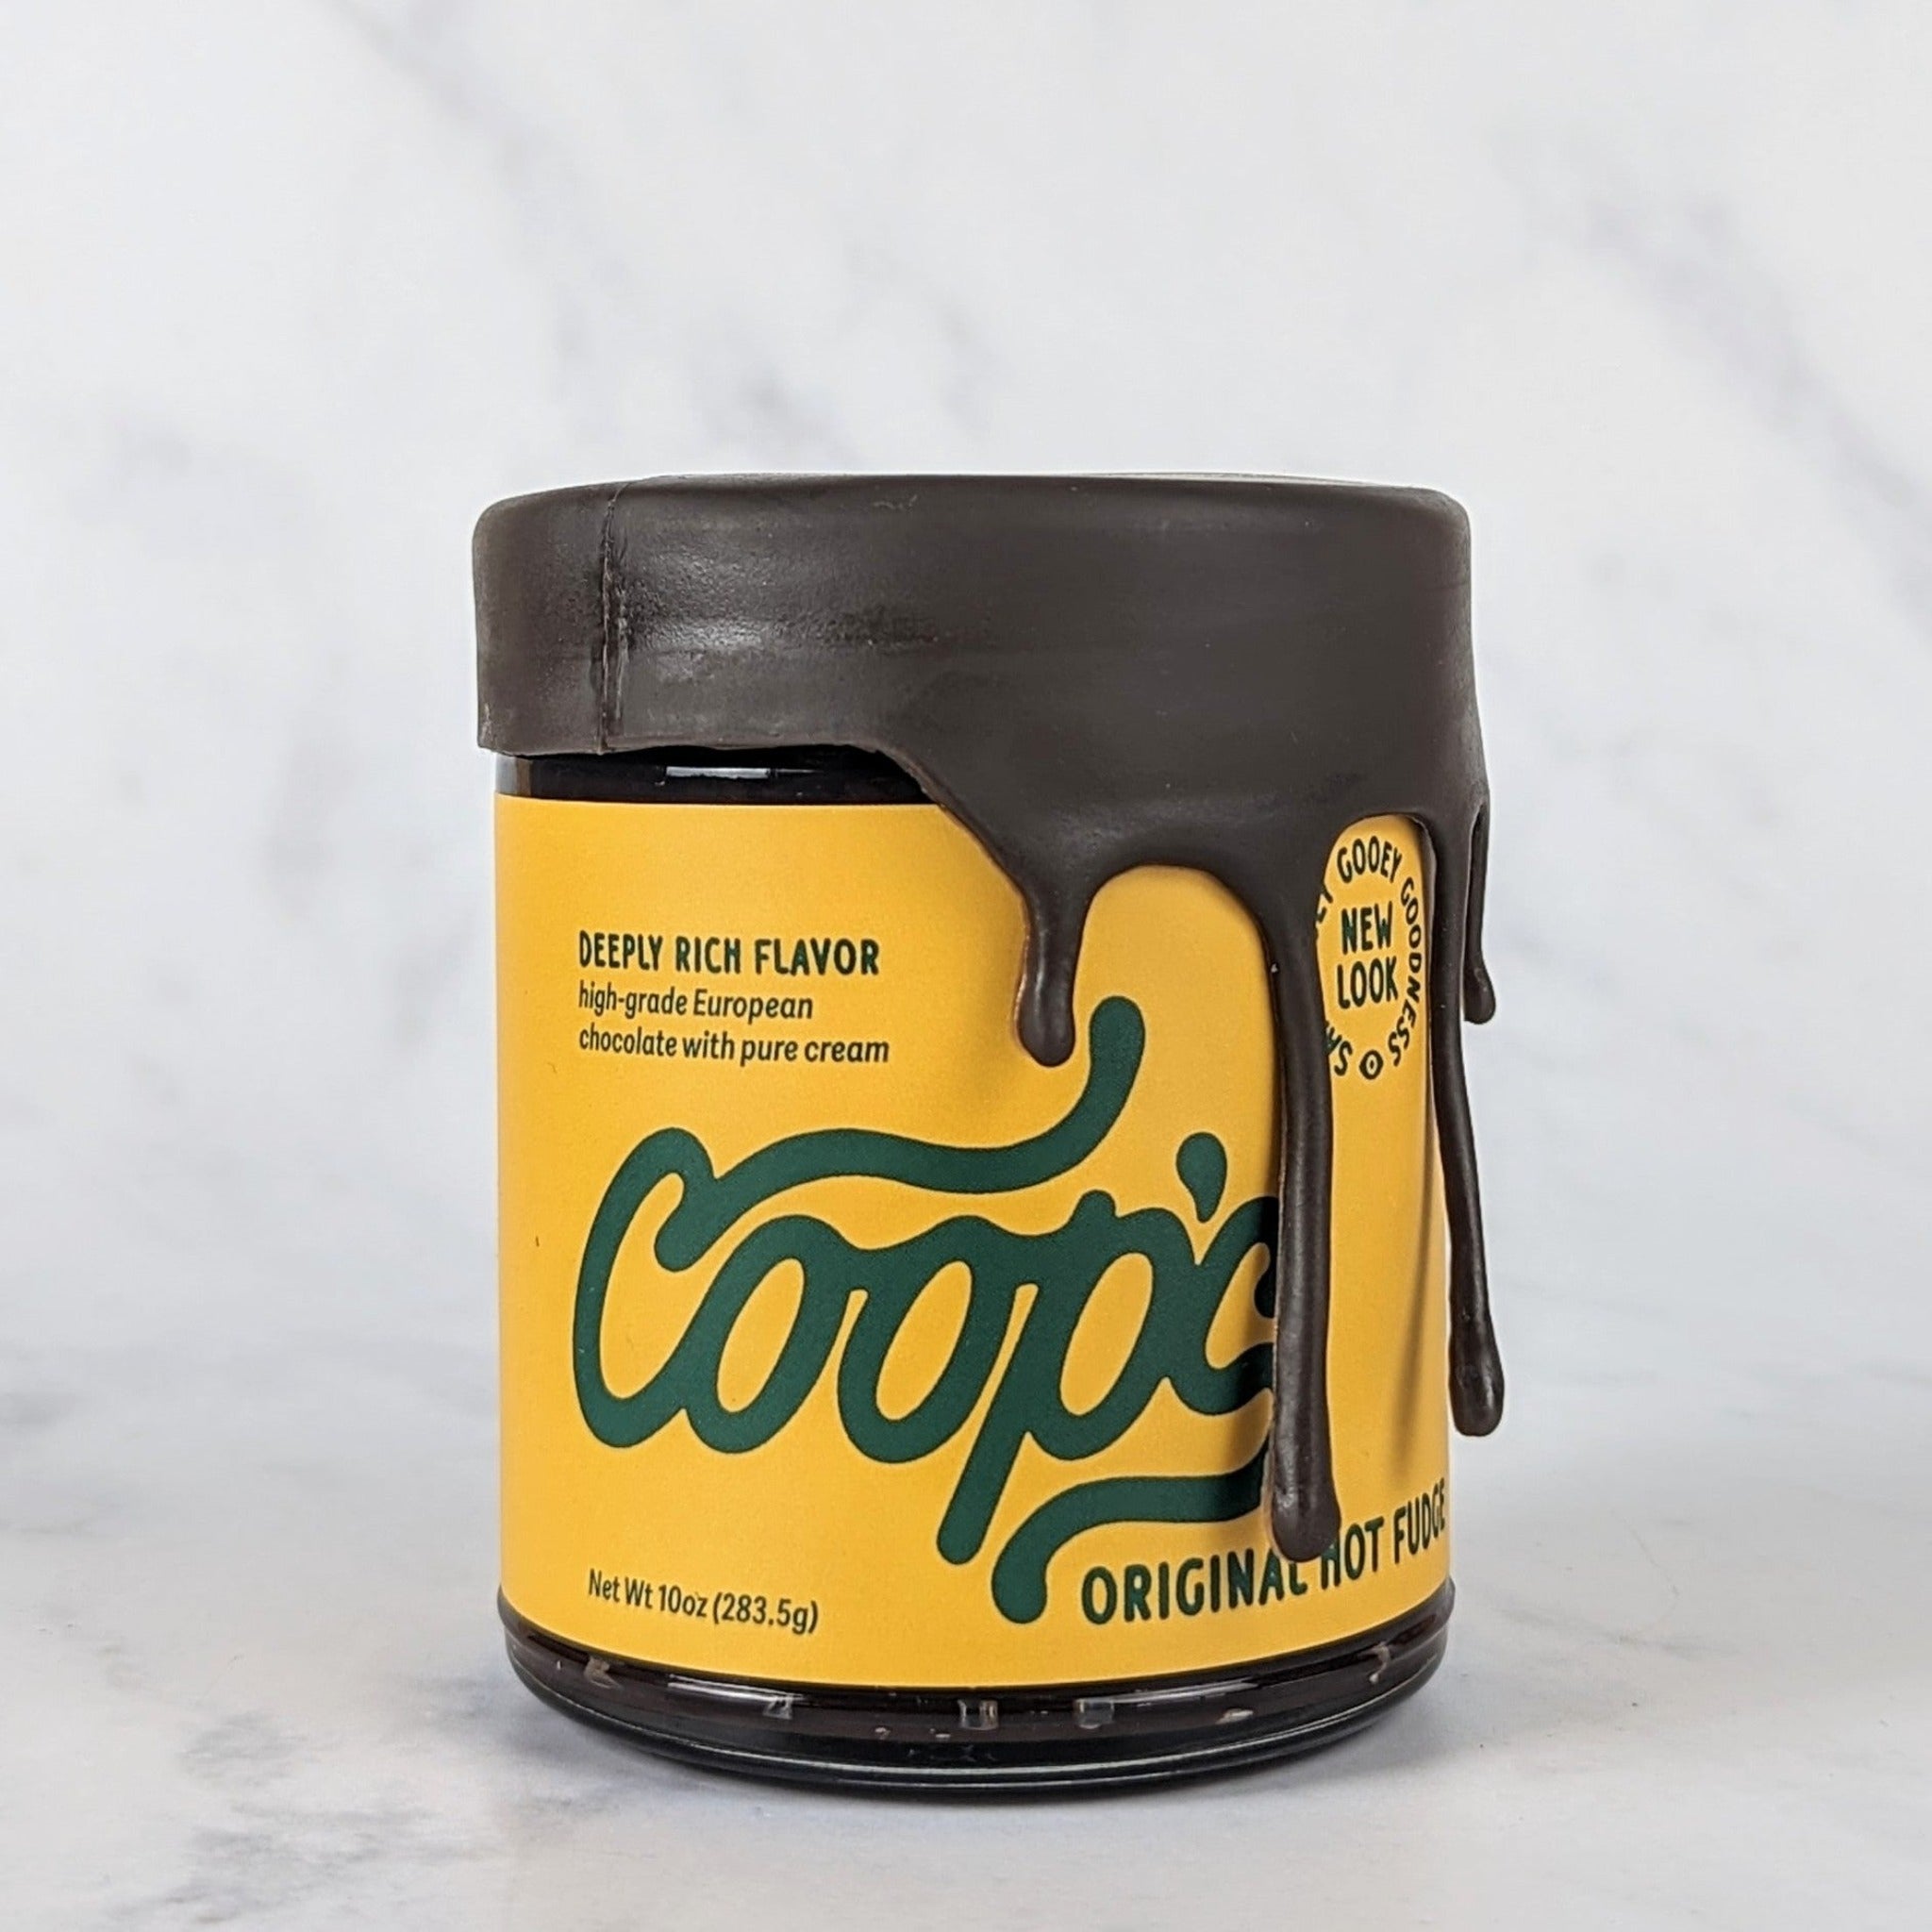 COOP'S Original Hot Fudge